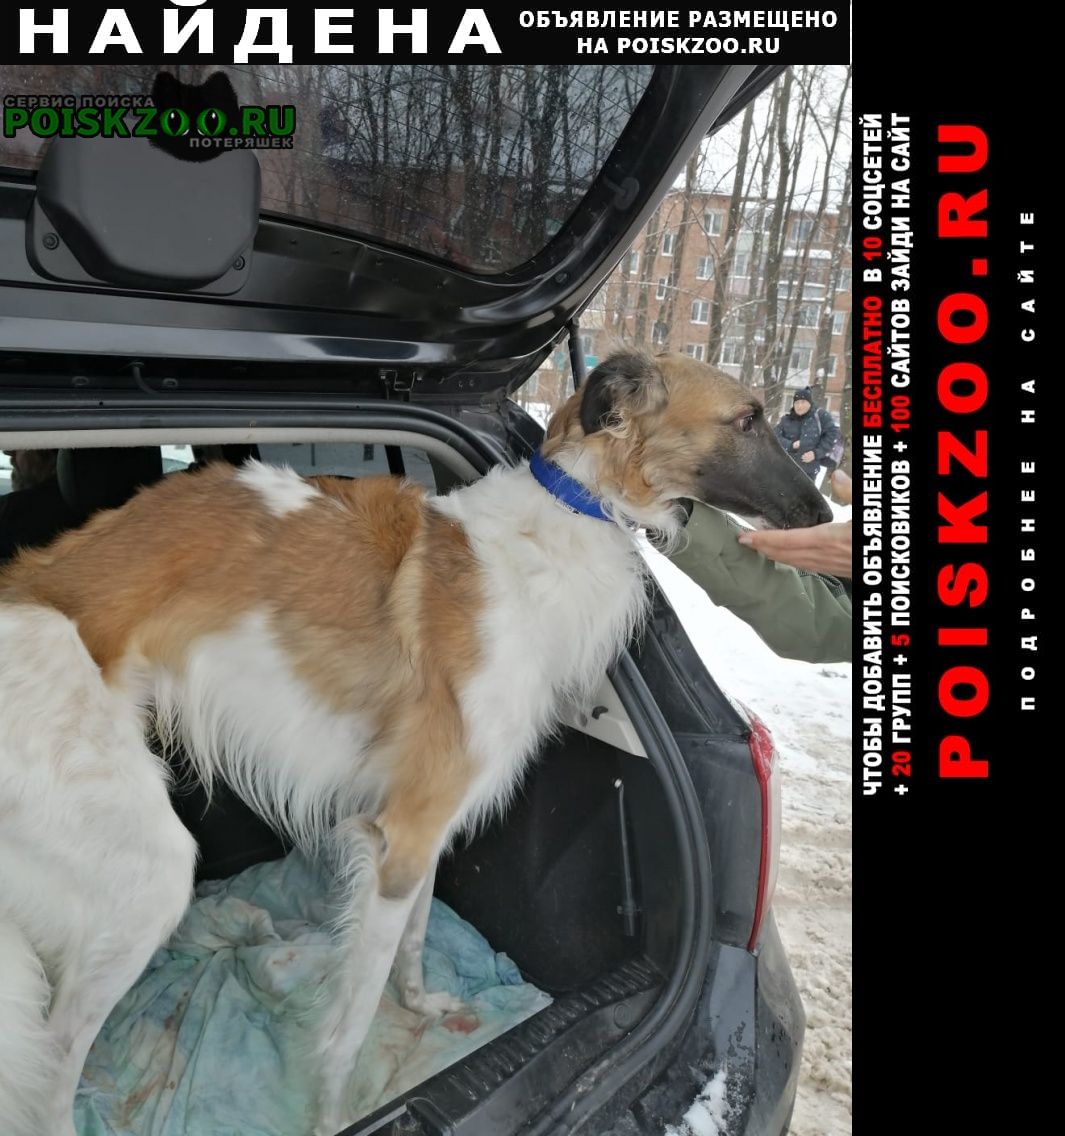 Найдена собака кобель русская псовая борзая, Сергиев Посад